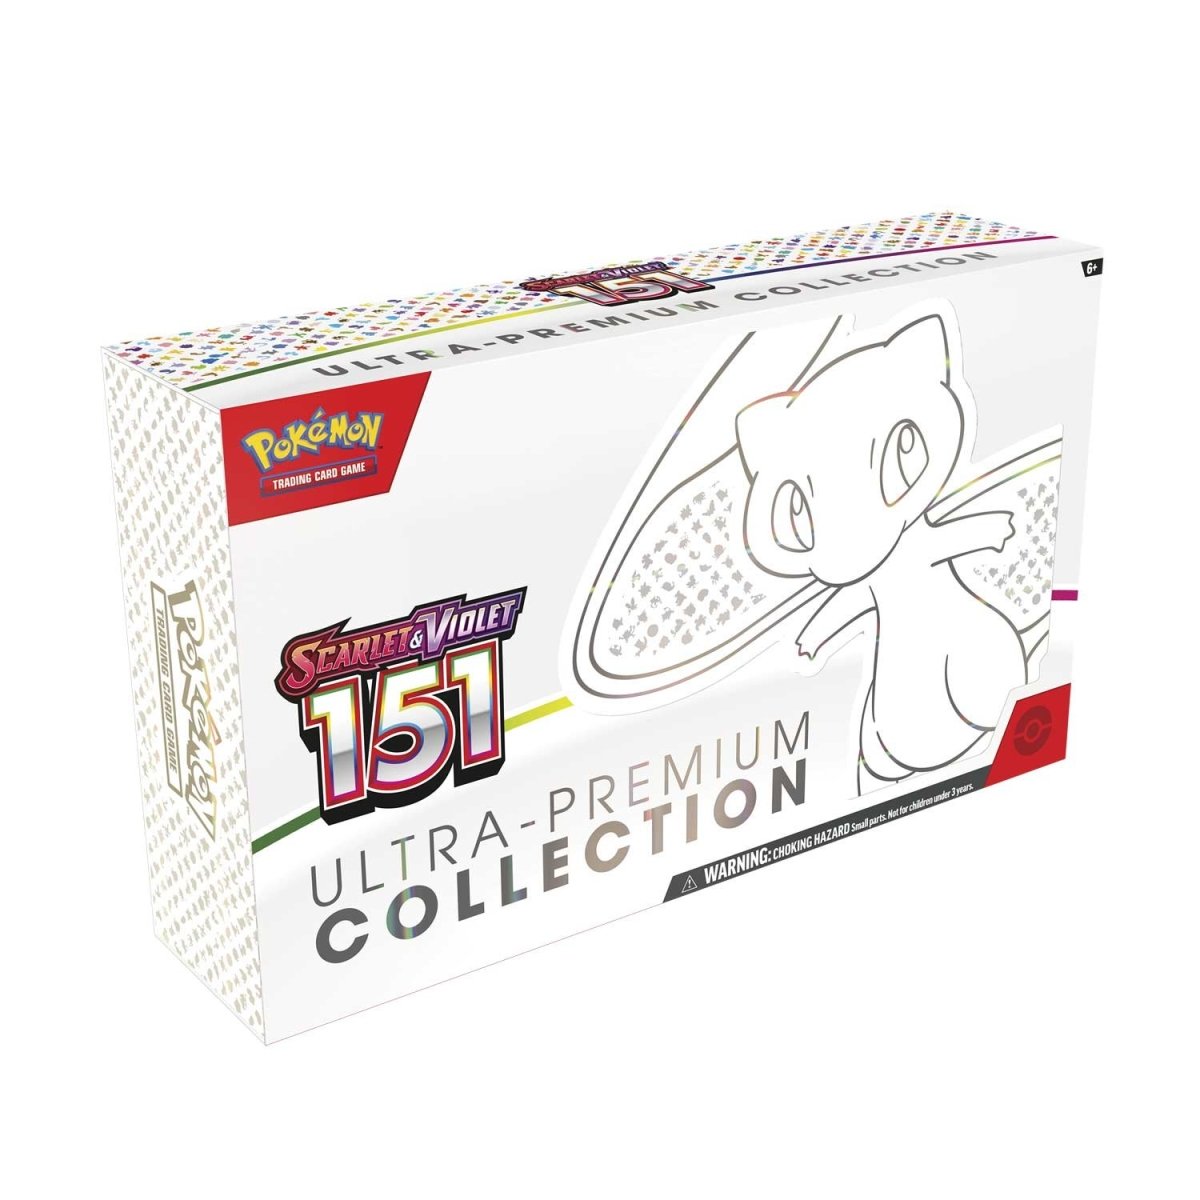 Pokémon Collection Classeur Ecarlate et Violet 151